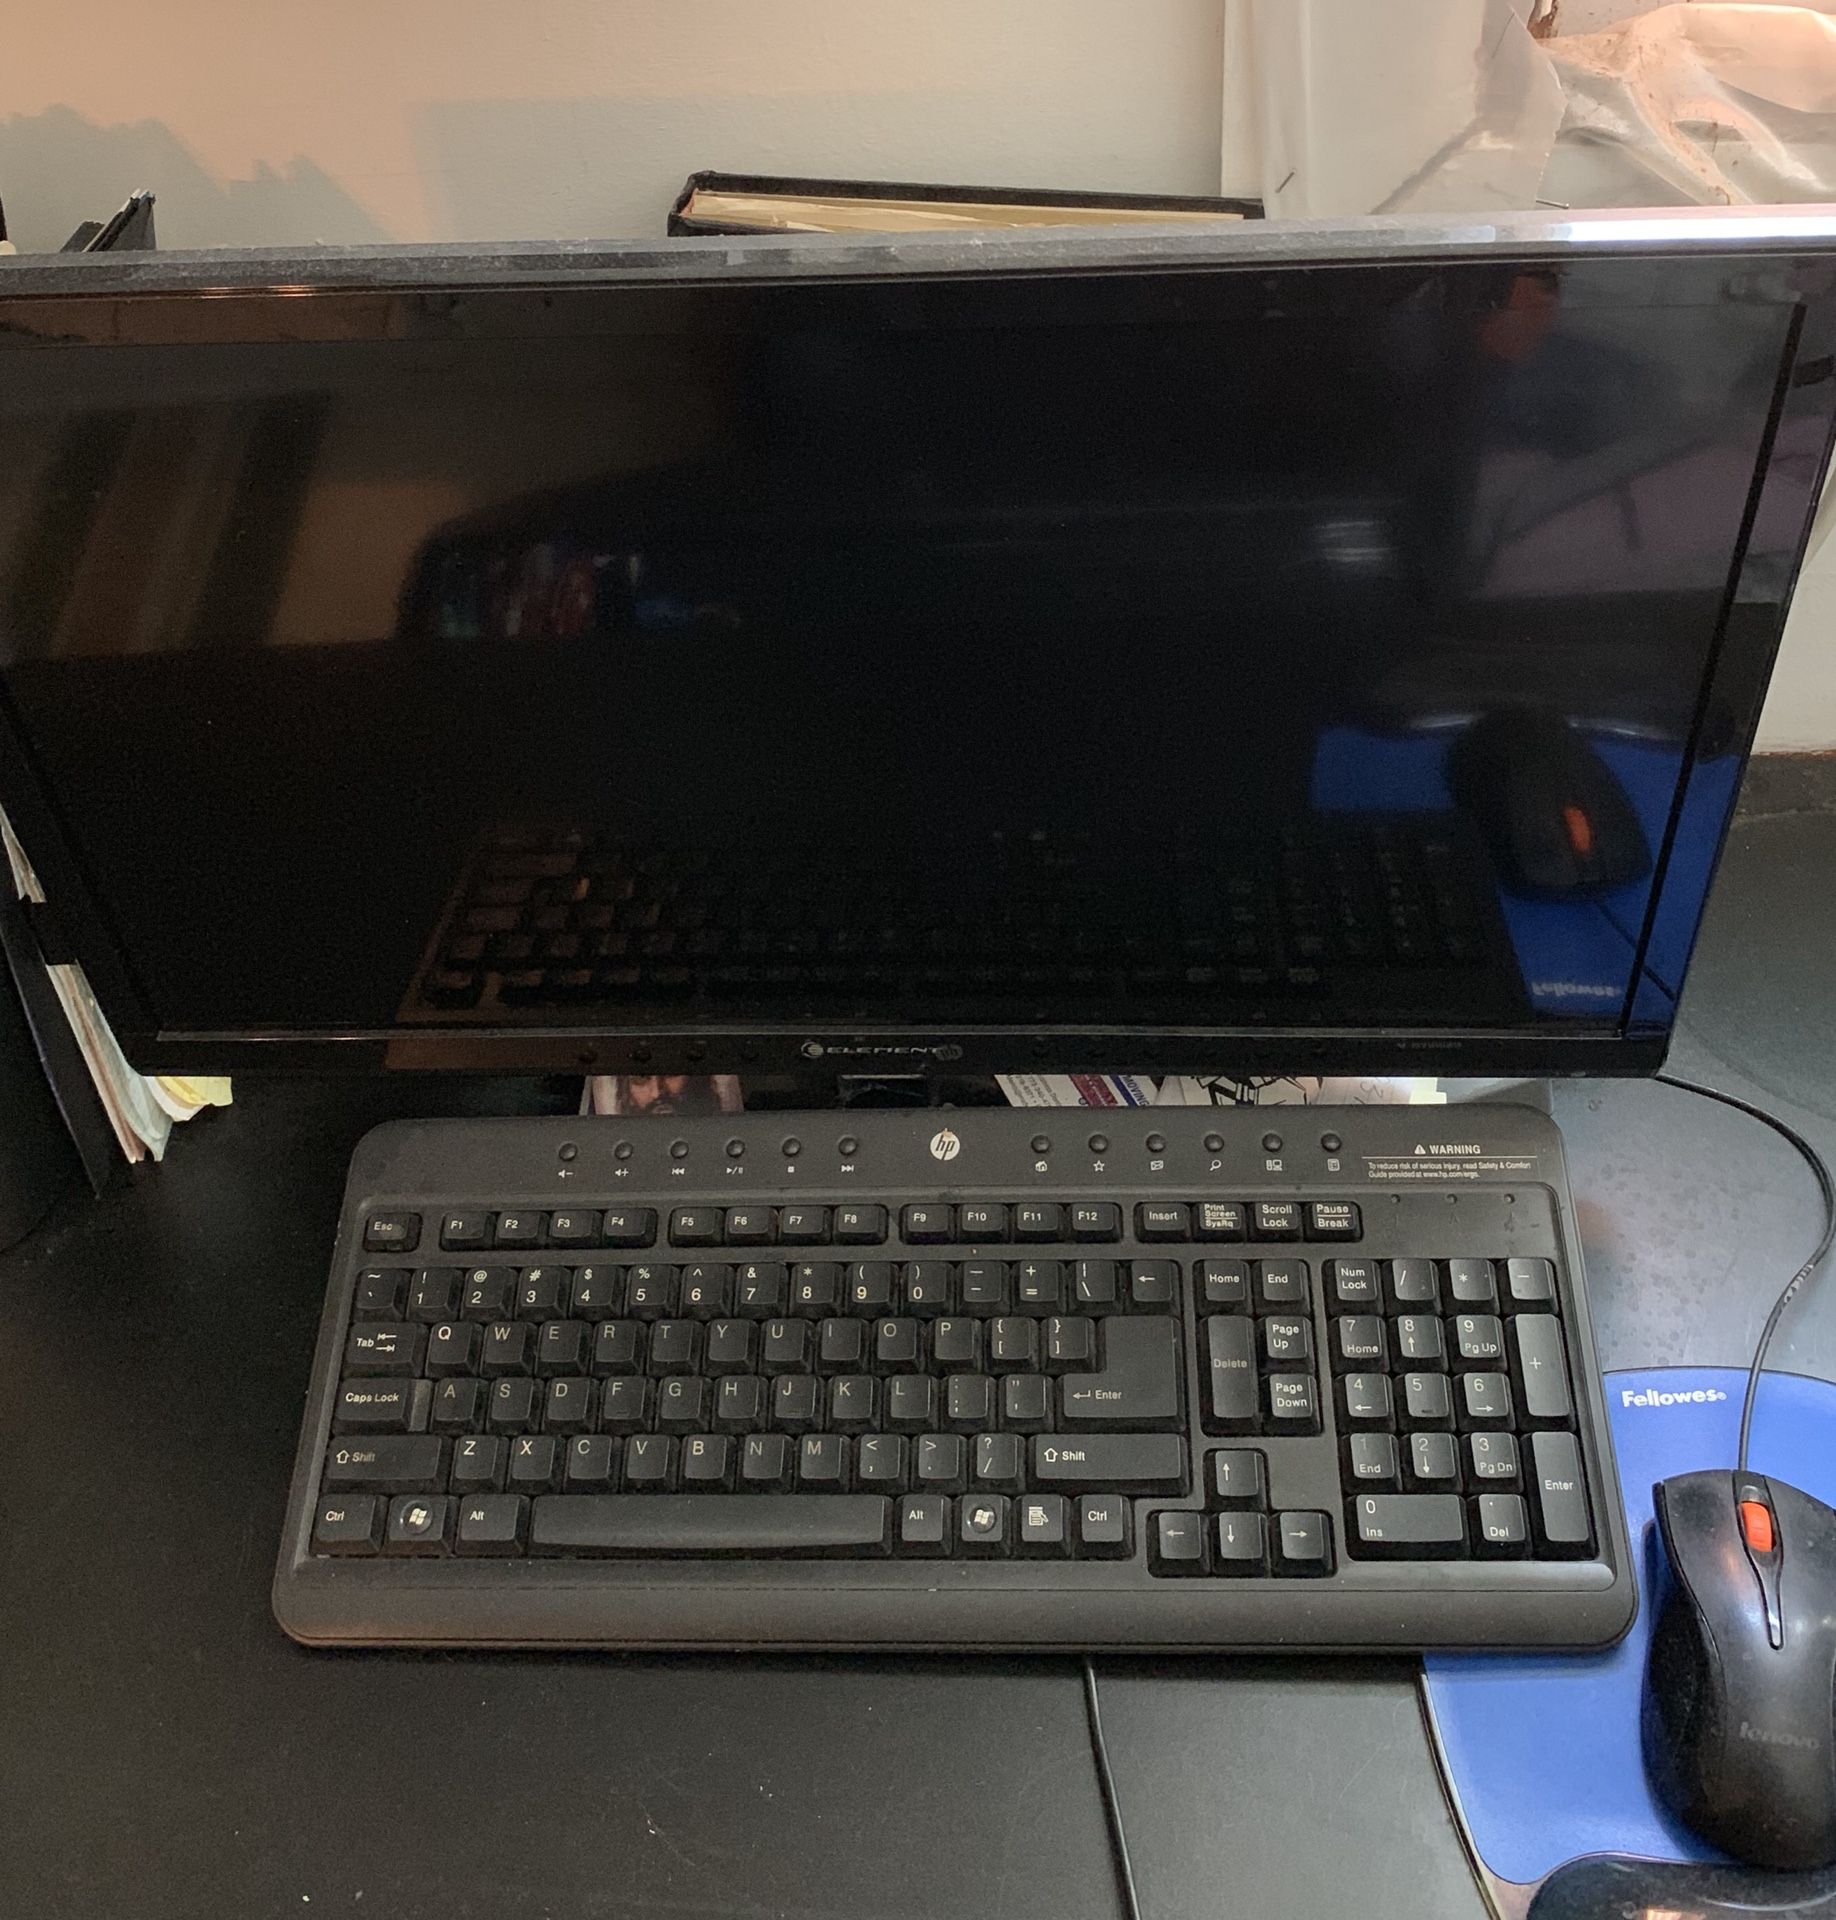 Computer Monitor, Keyboard, and Printer